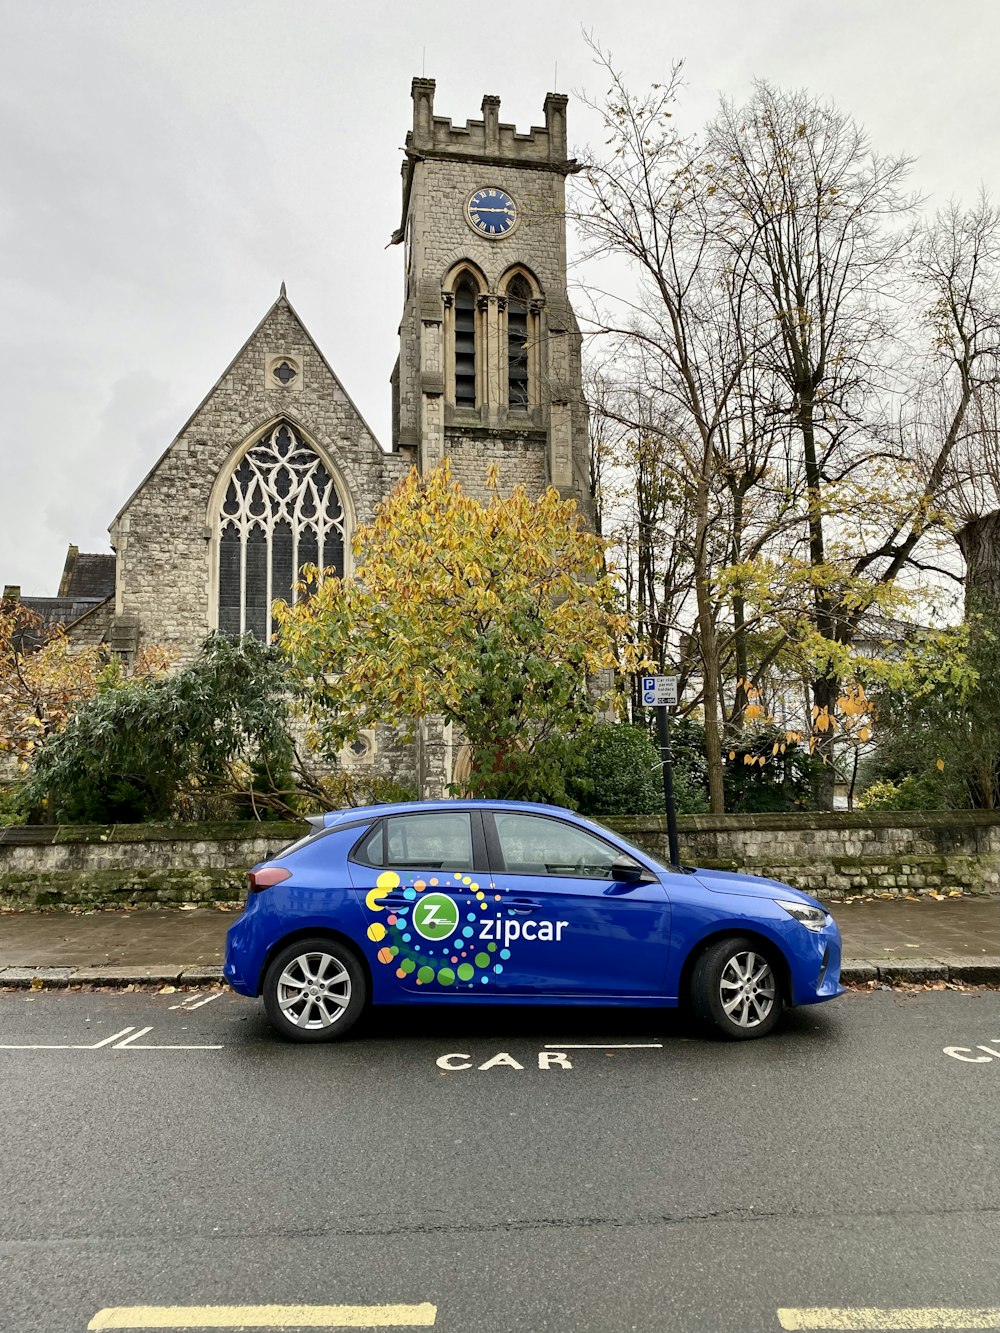 Un coche azul aparcado frente a una iglesia